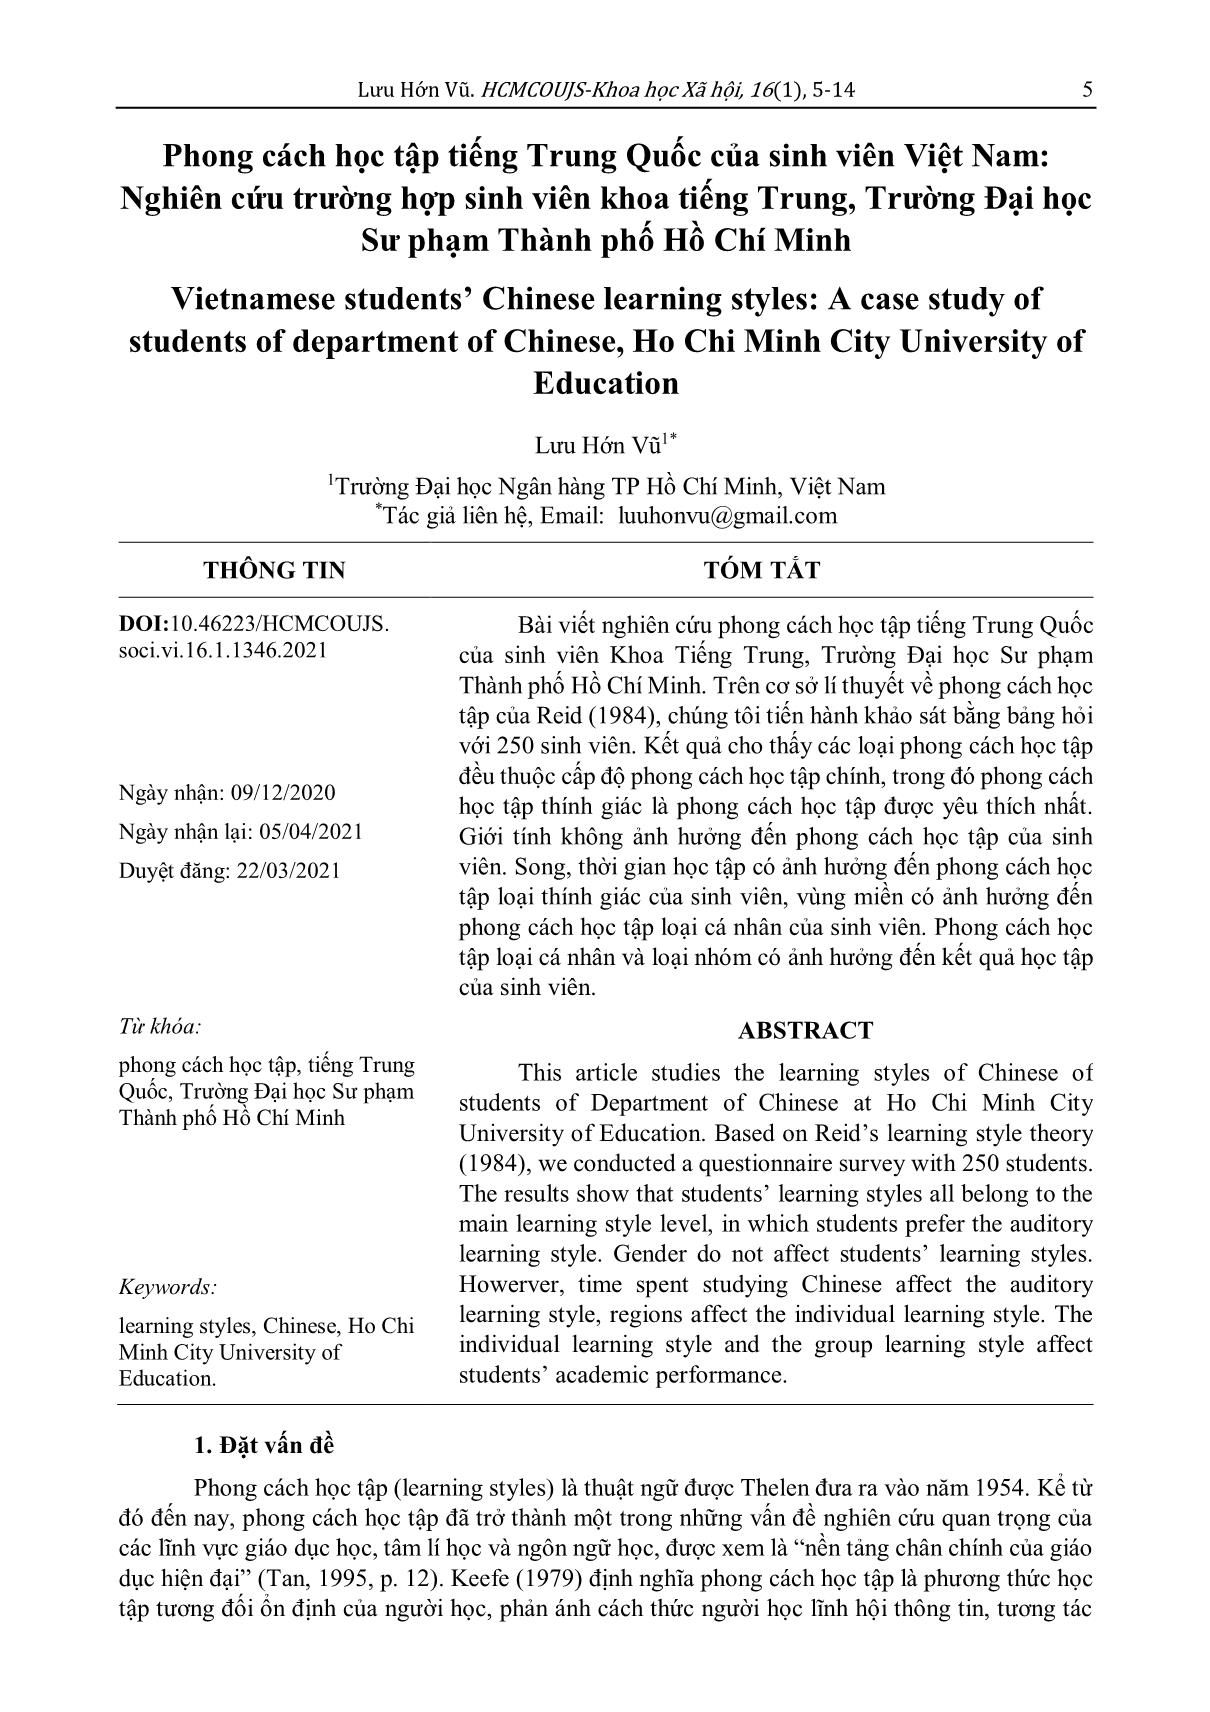 Phong cách học tập tiếng Trung Quốc của sinh viên Việt Nam: Nghiên cứu trường hợp sinh viên khoa tiếng Trung, Trường Đại học Sư phạm Thành phố Hồ Chí Minh trang 1